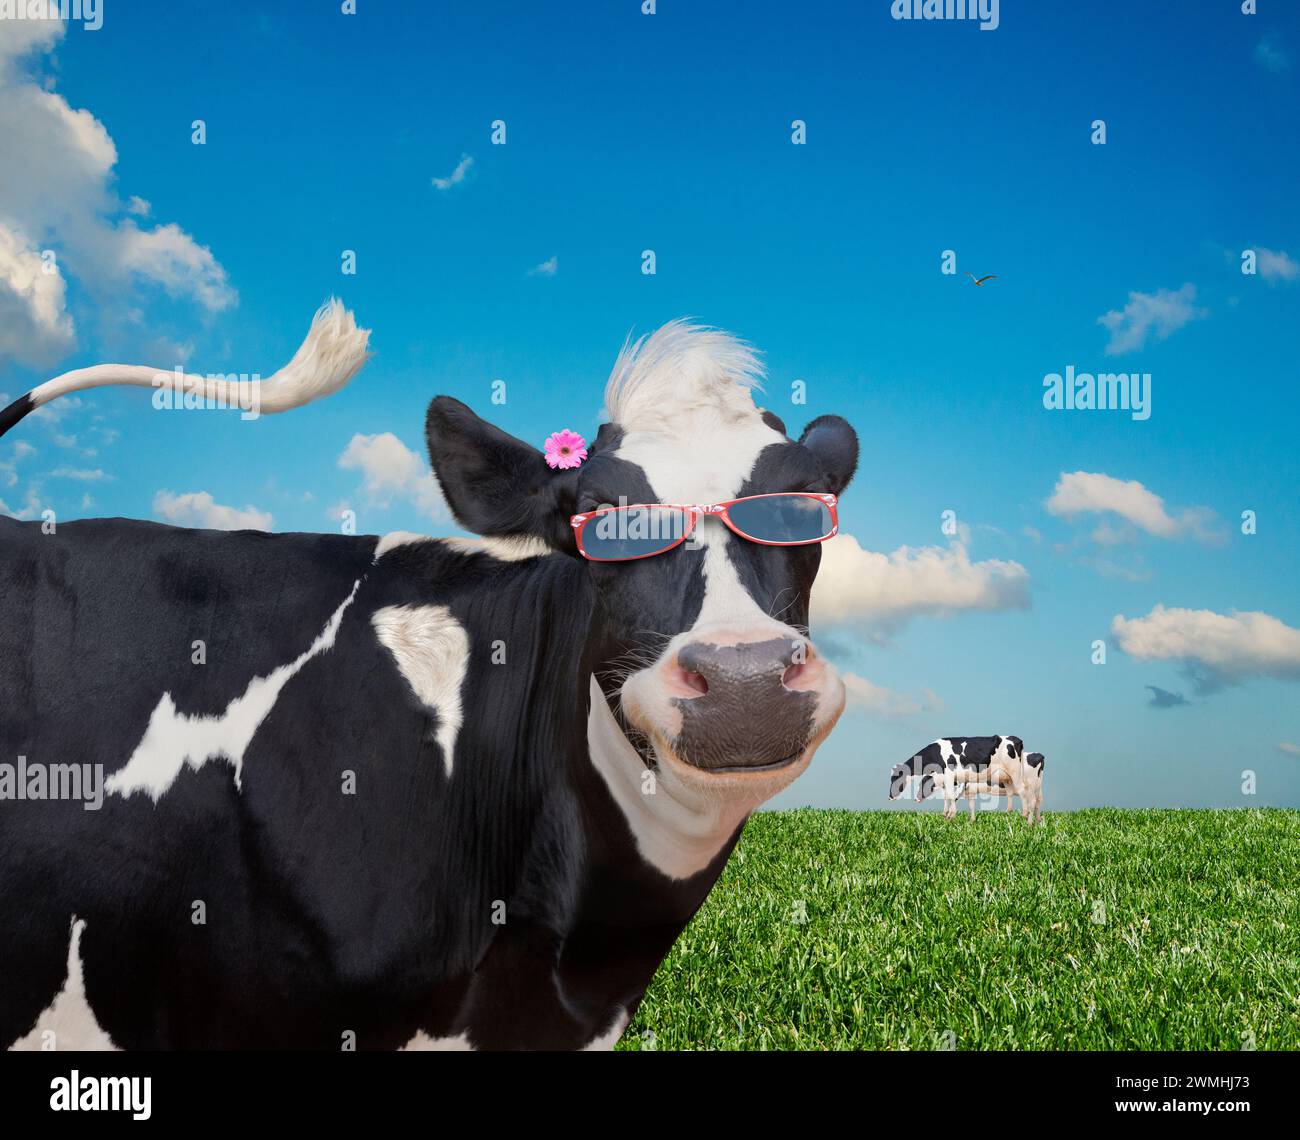 Une vache Holstein satisfaite porte des lunettes de soleil alors qu'elle mâche son cud dans une prairie sous un ciel d'été dans une image prenant un regard humoristique sur les vaches. Banque D'Images